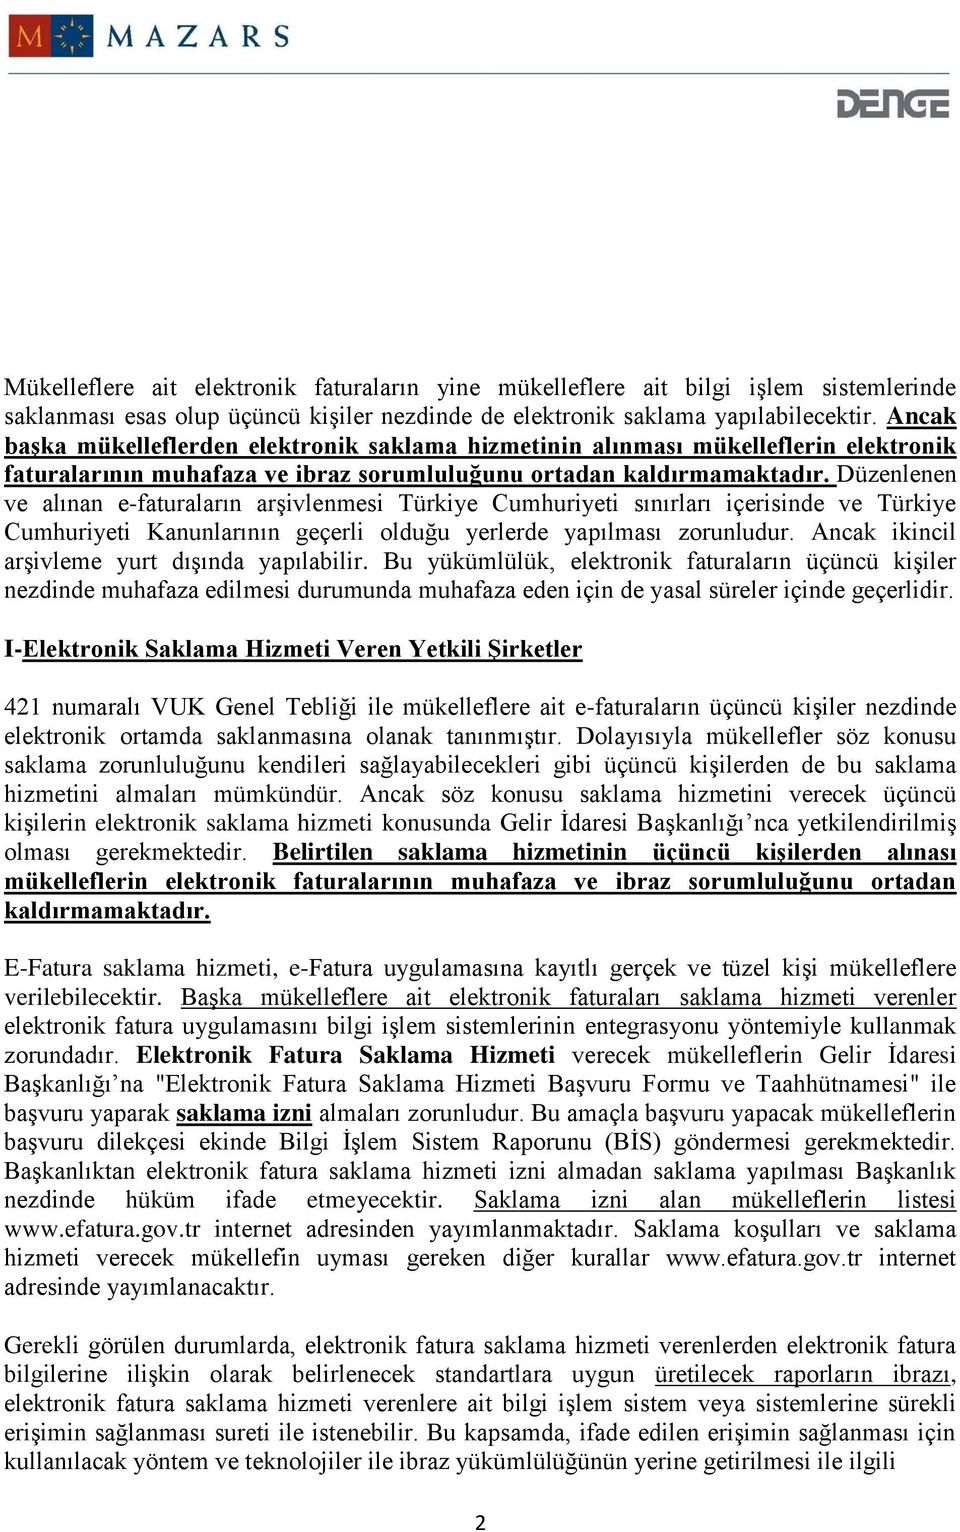 Düzenlenen ve alınan e-faturaların arşivlenmesi Türkiye Cumhuriyeti sınırları içerisinde ve Türkiye Cumhuriyeti Kanunlarının geçerli olduğu yerlerde yapılması zorunludur.